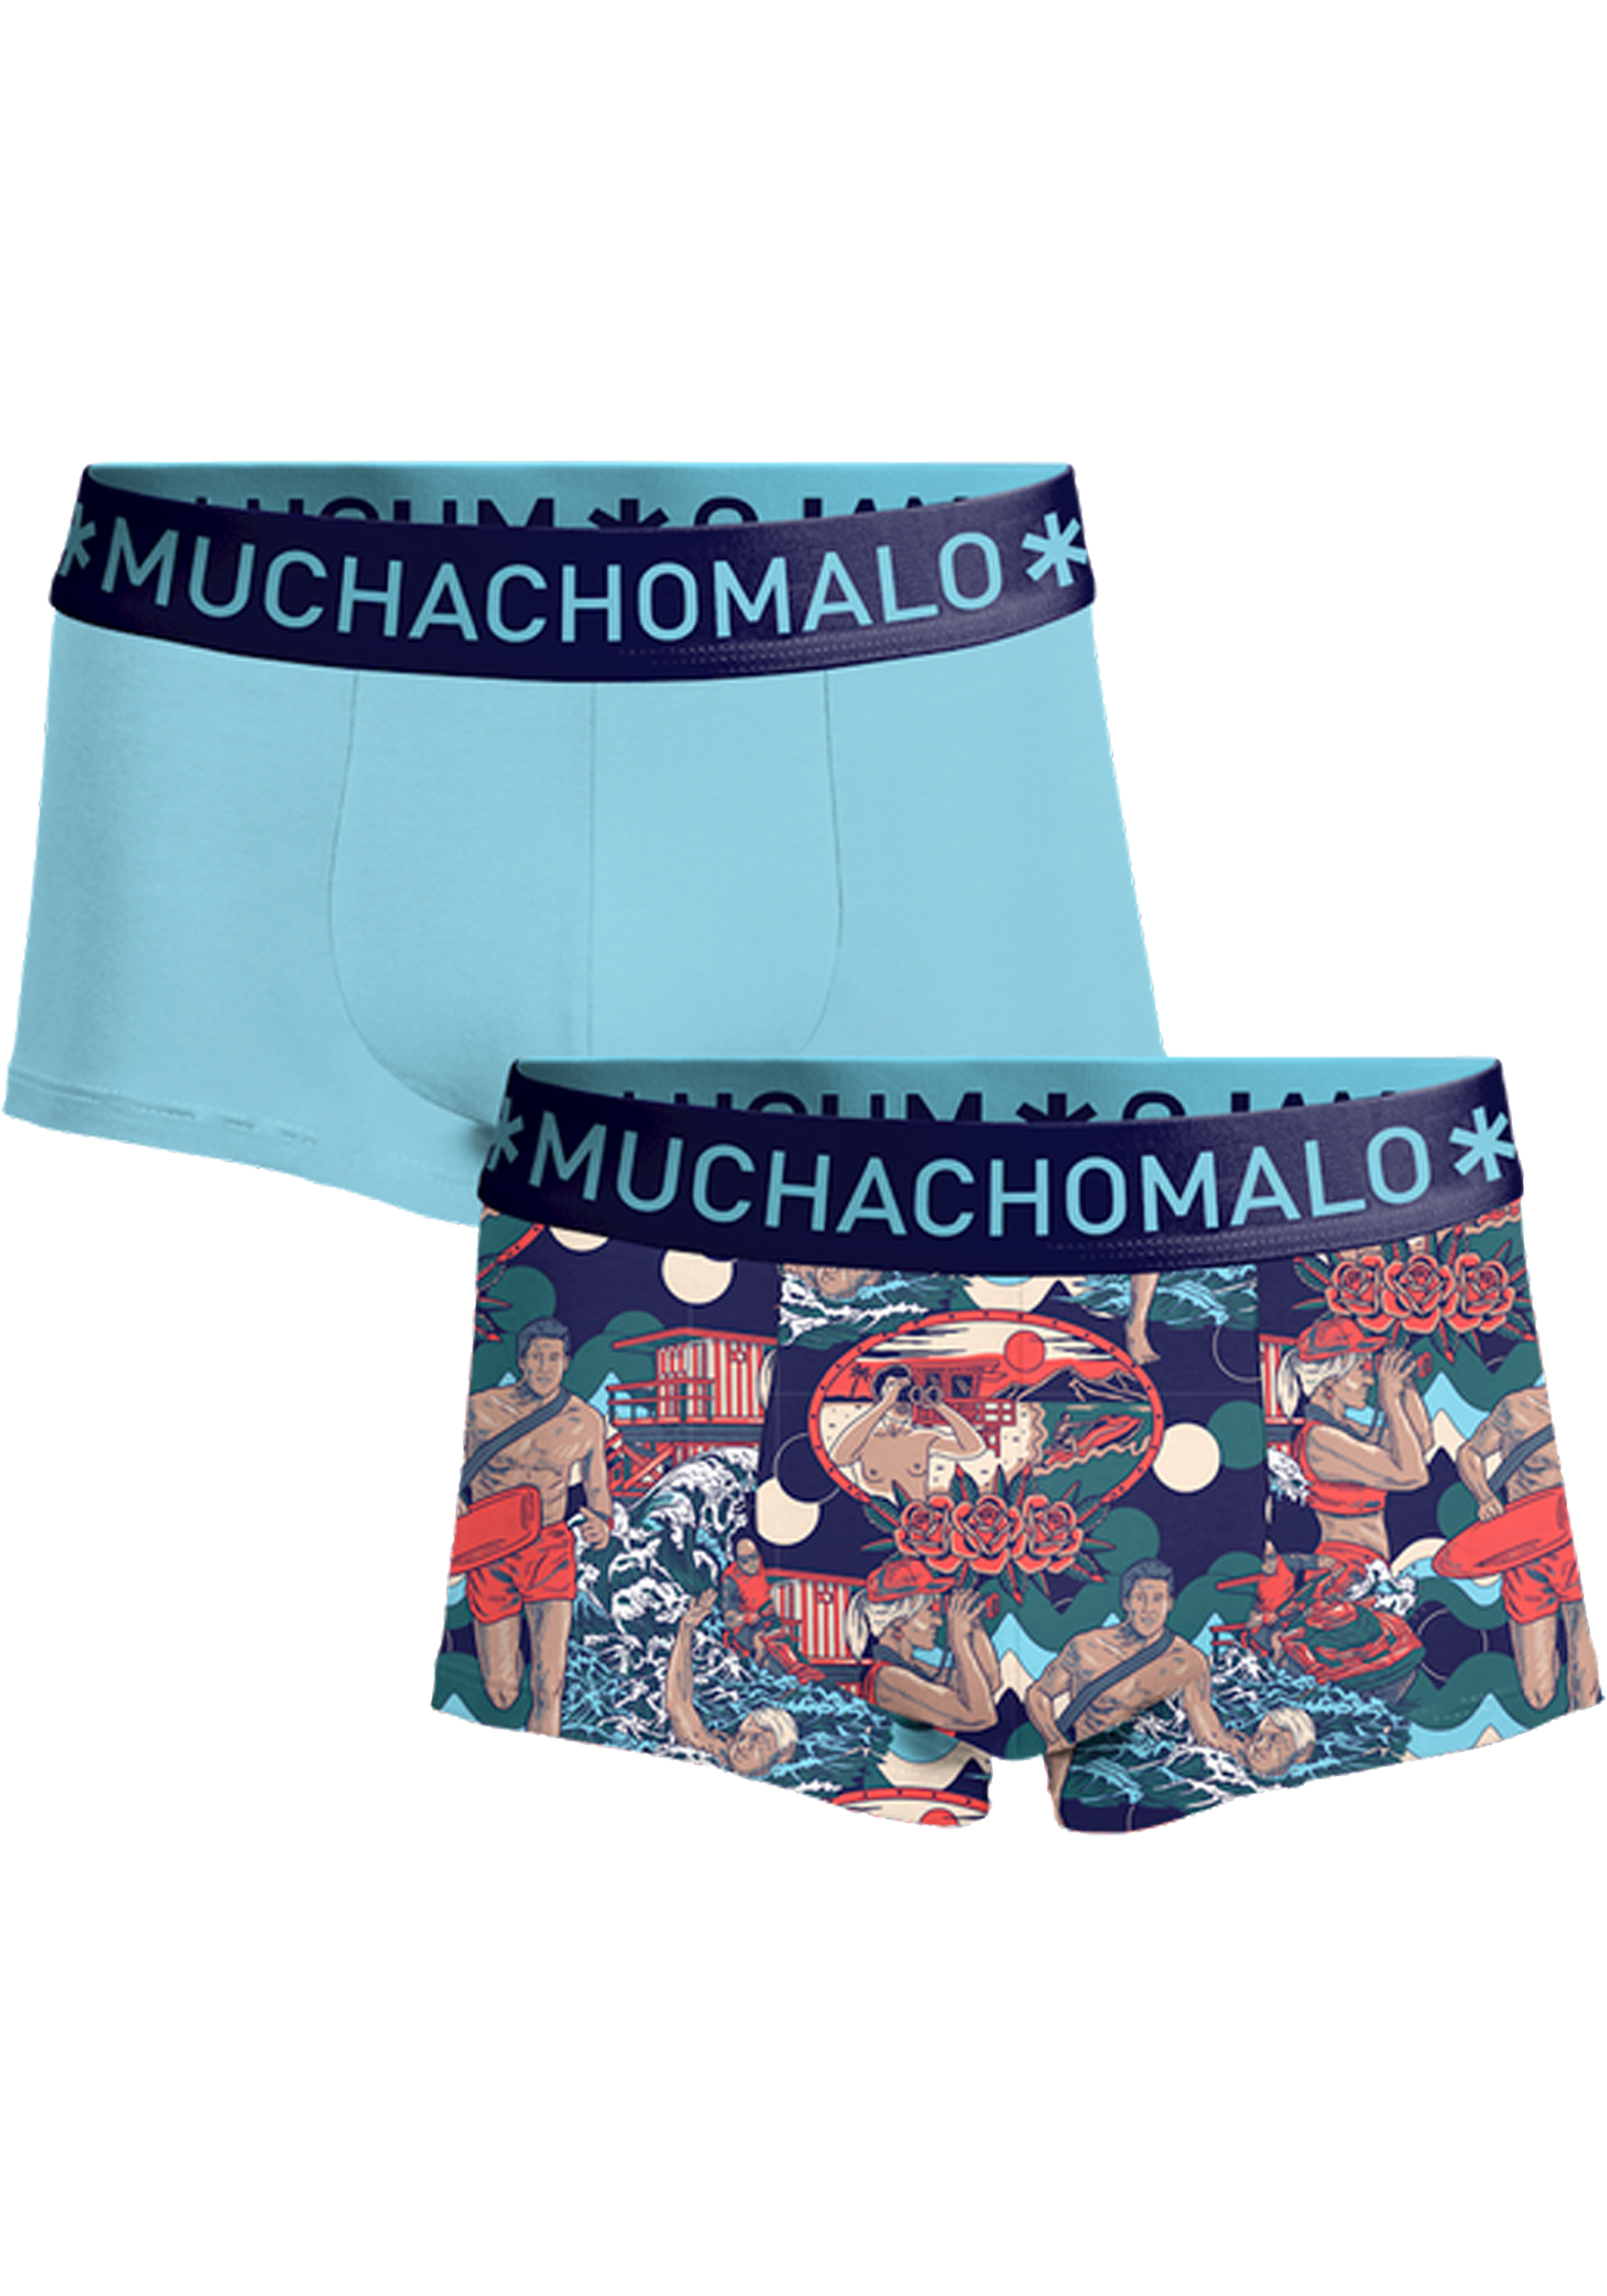 Muchachomalo boxershorts, heren boxers kort (2-pack), Hercules Baywatch